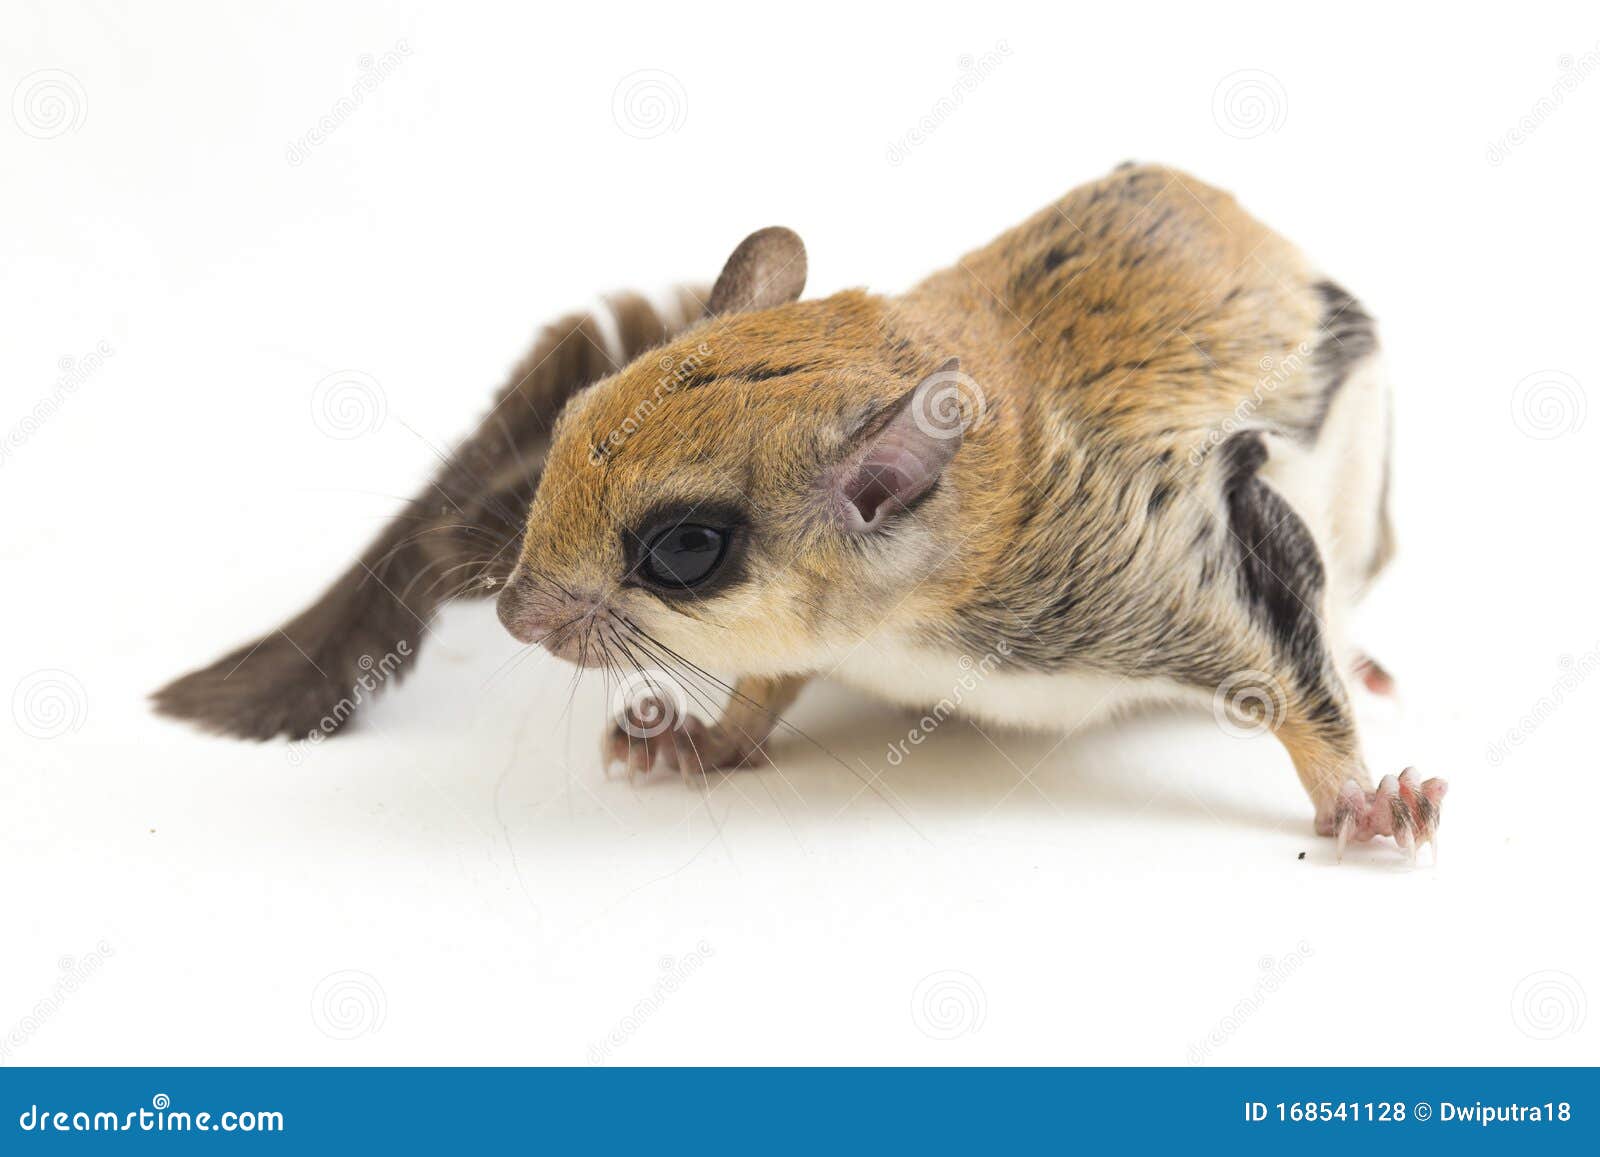 Holandeses criam rato-voador com corpo de roedor morto